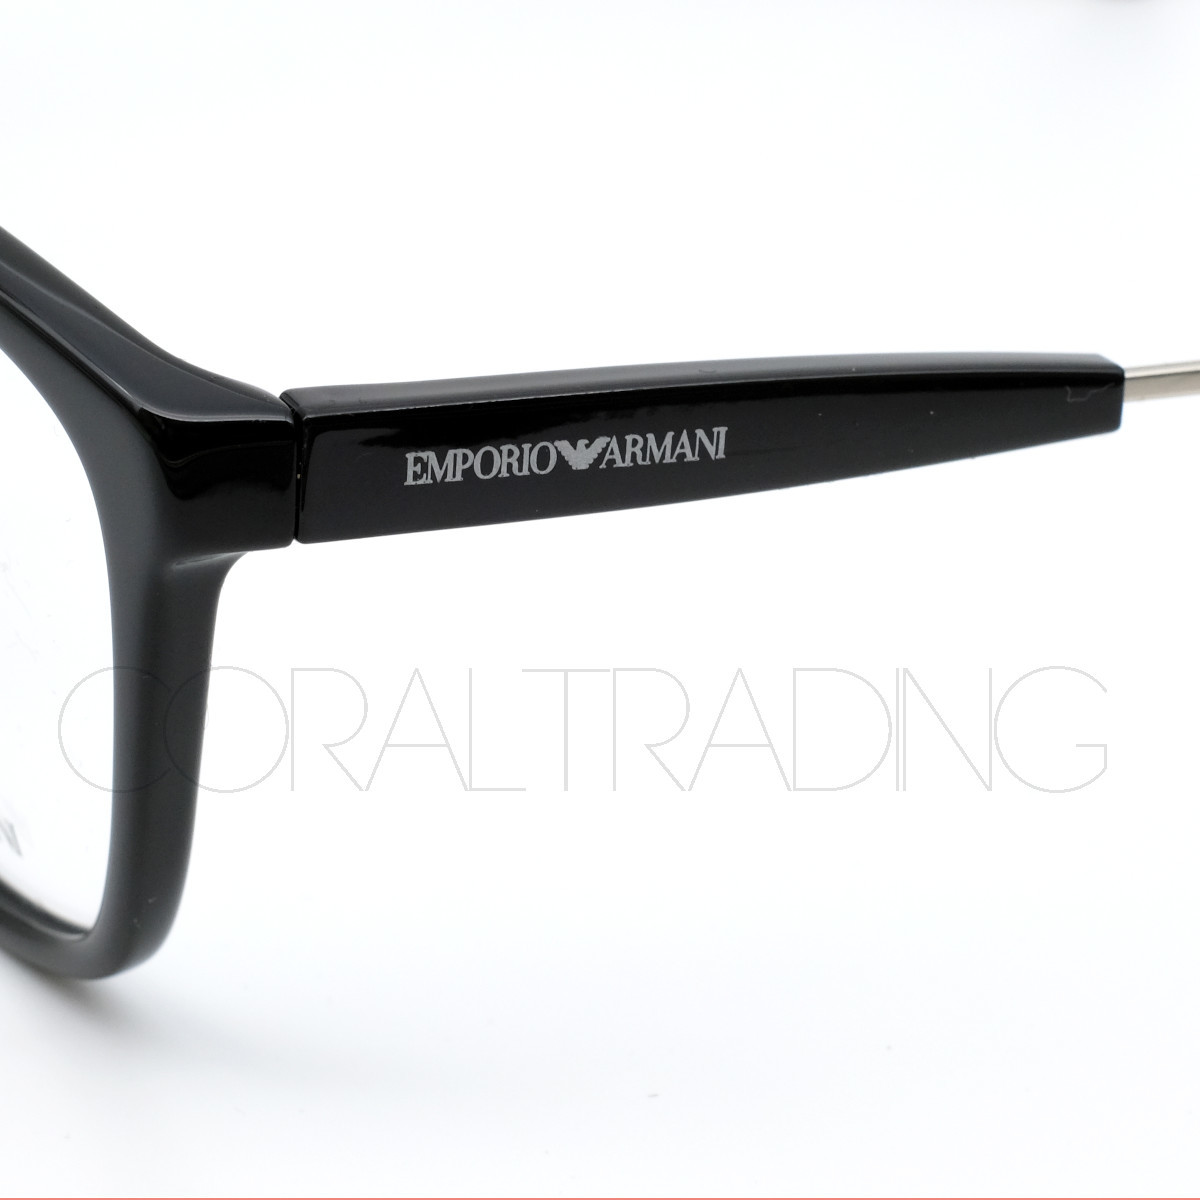 23105★新品本物！EMPORIO ARMANI EA3165F 5001 ブラック エンポリオアルマーニ アジアンフィットモデル メガネ ウェリントンシェイプ 眼鏡